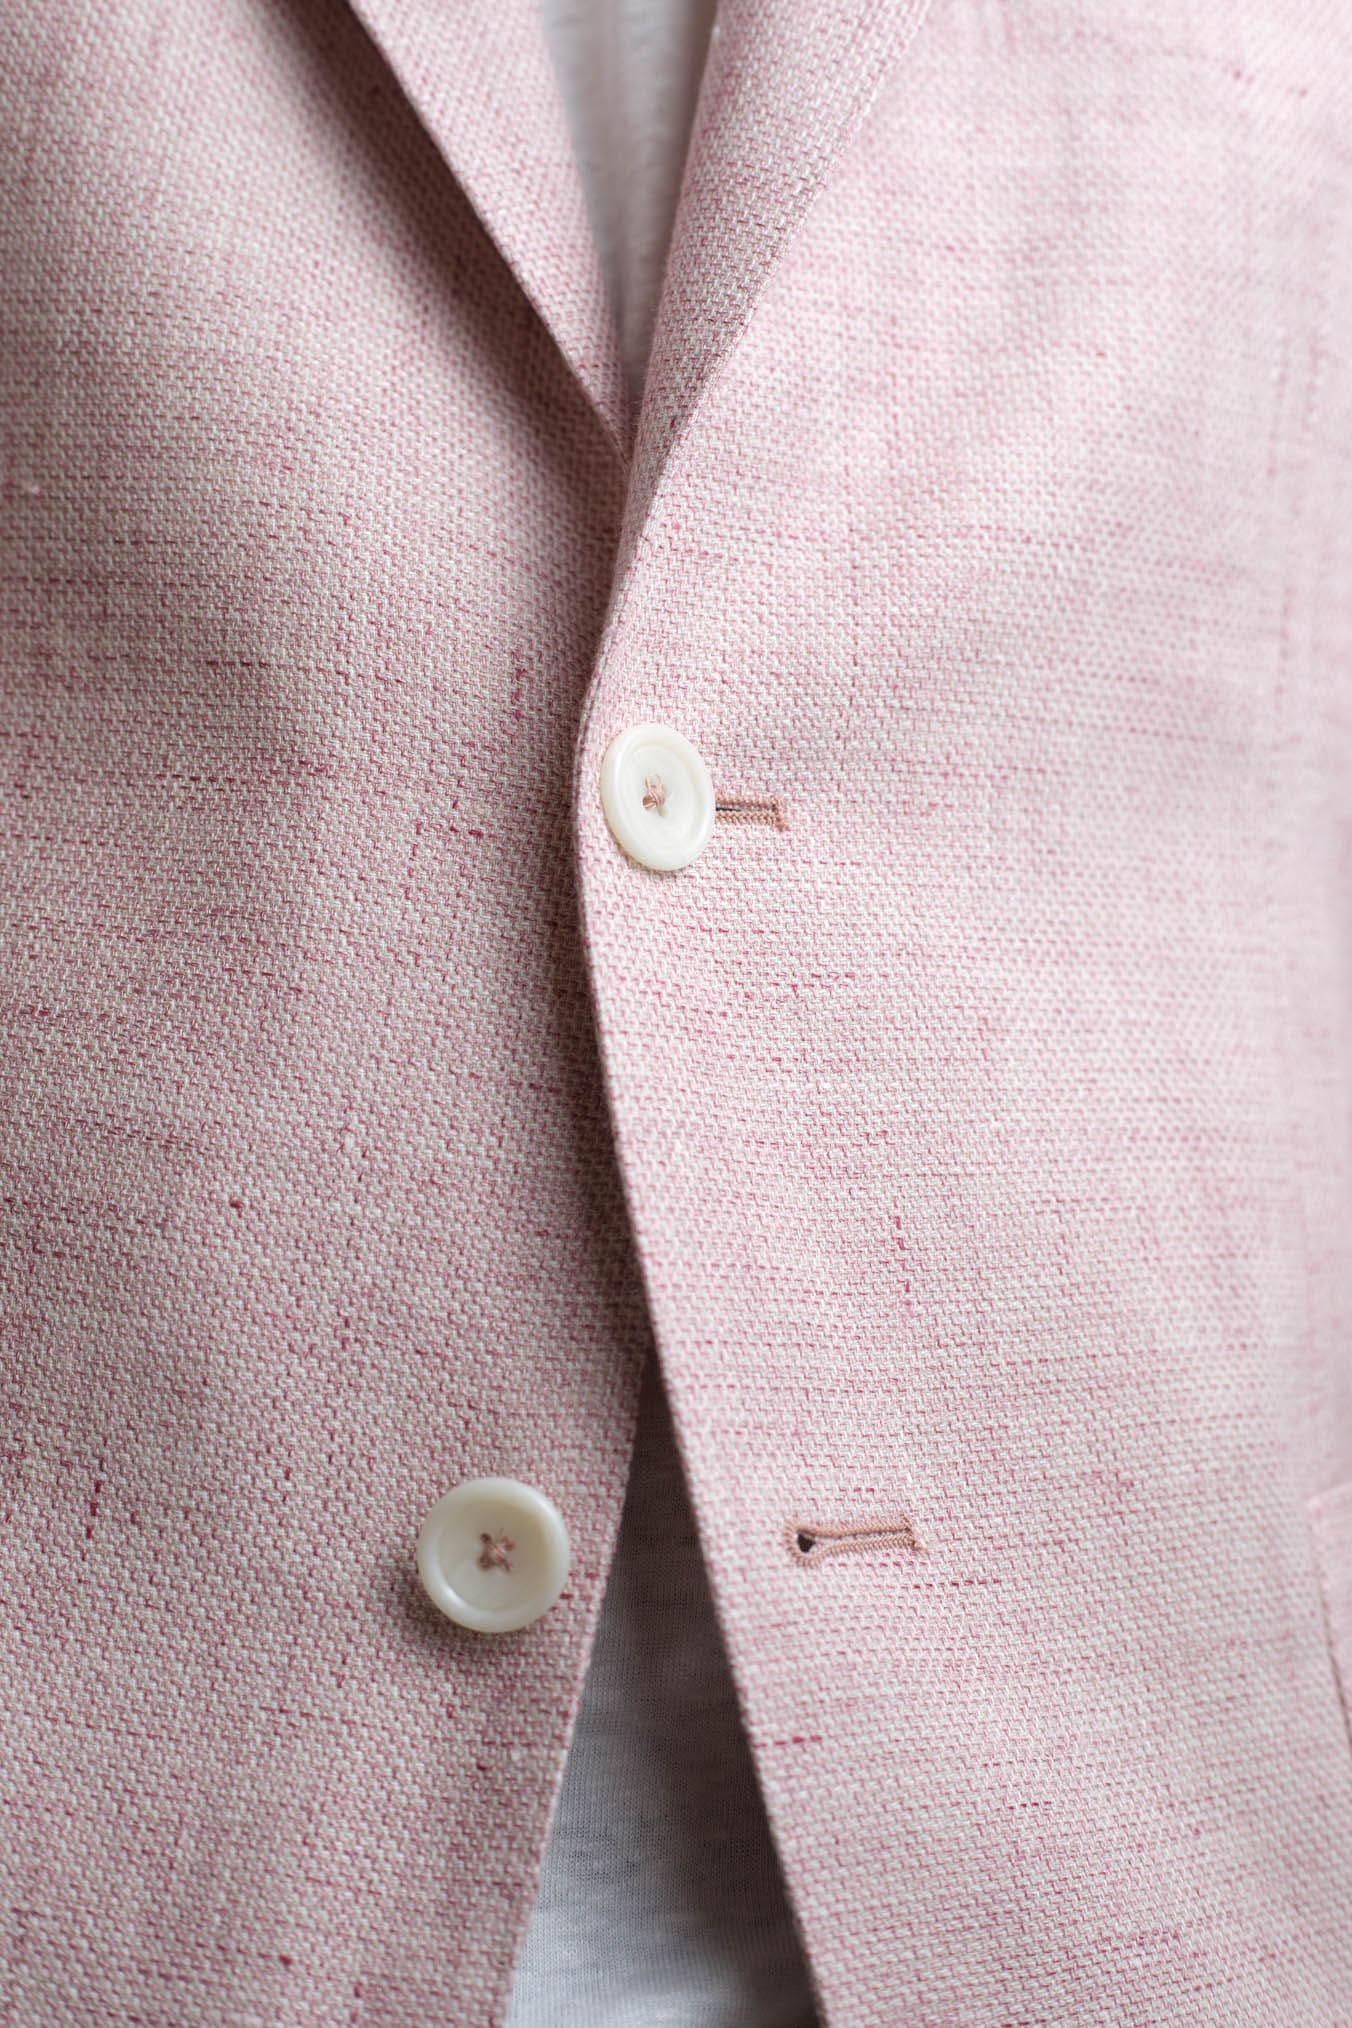 TAGLIATORE Pink Mélange Cotton Linen Jacket